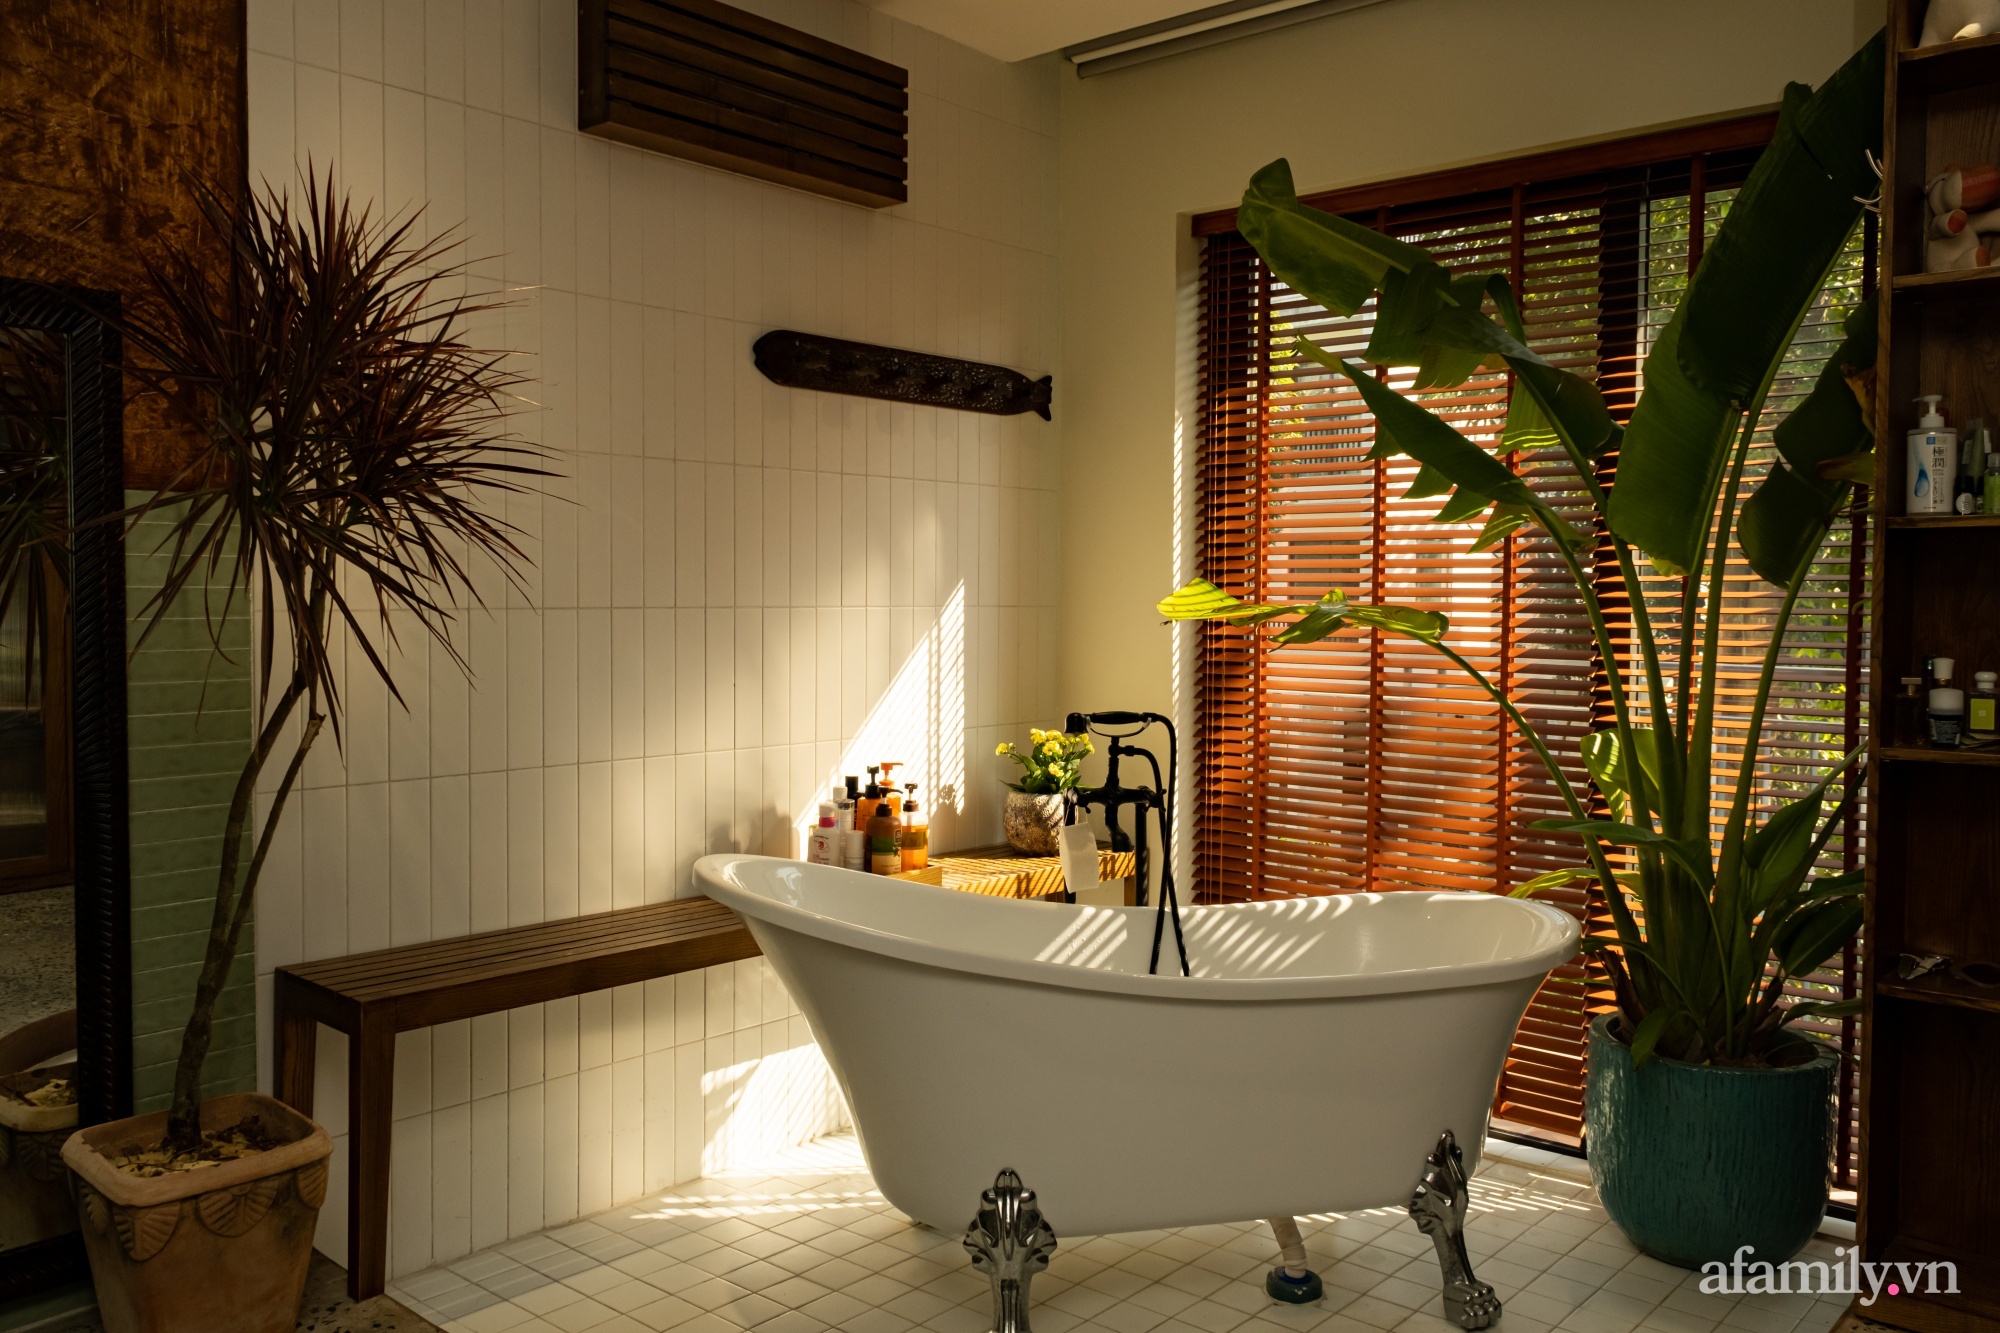 Phòng tắm kết hợp nơi thay đồ đẹp bình yên với sắc màu bản địa có chi phí 200 triệu đồng ở ngoại thành Hà Nội - Ảnh 3.